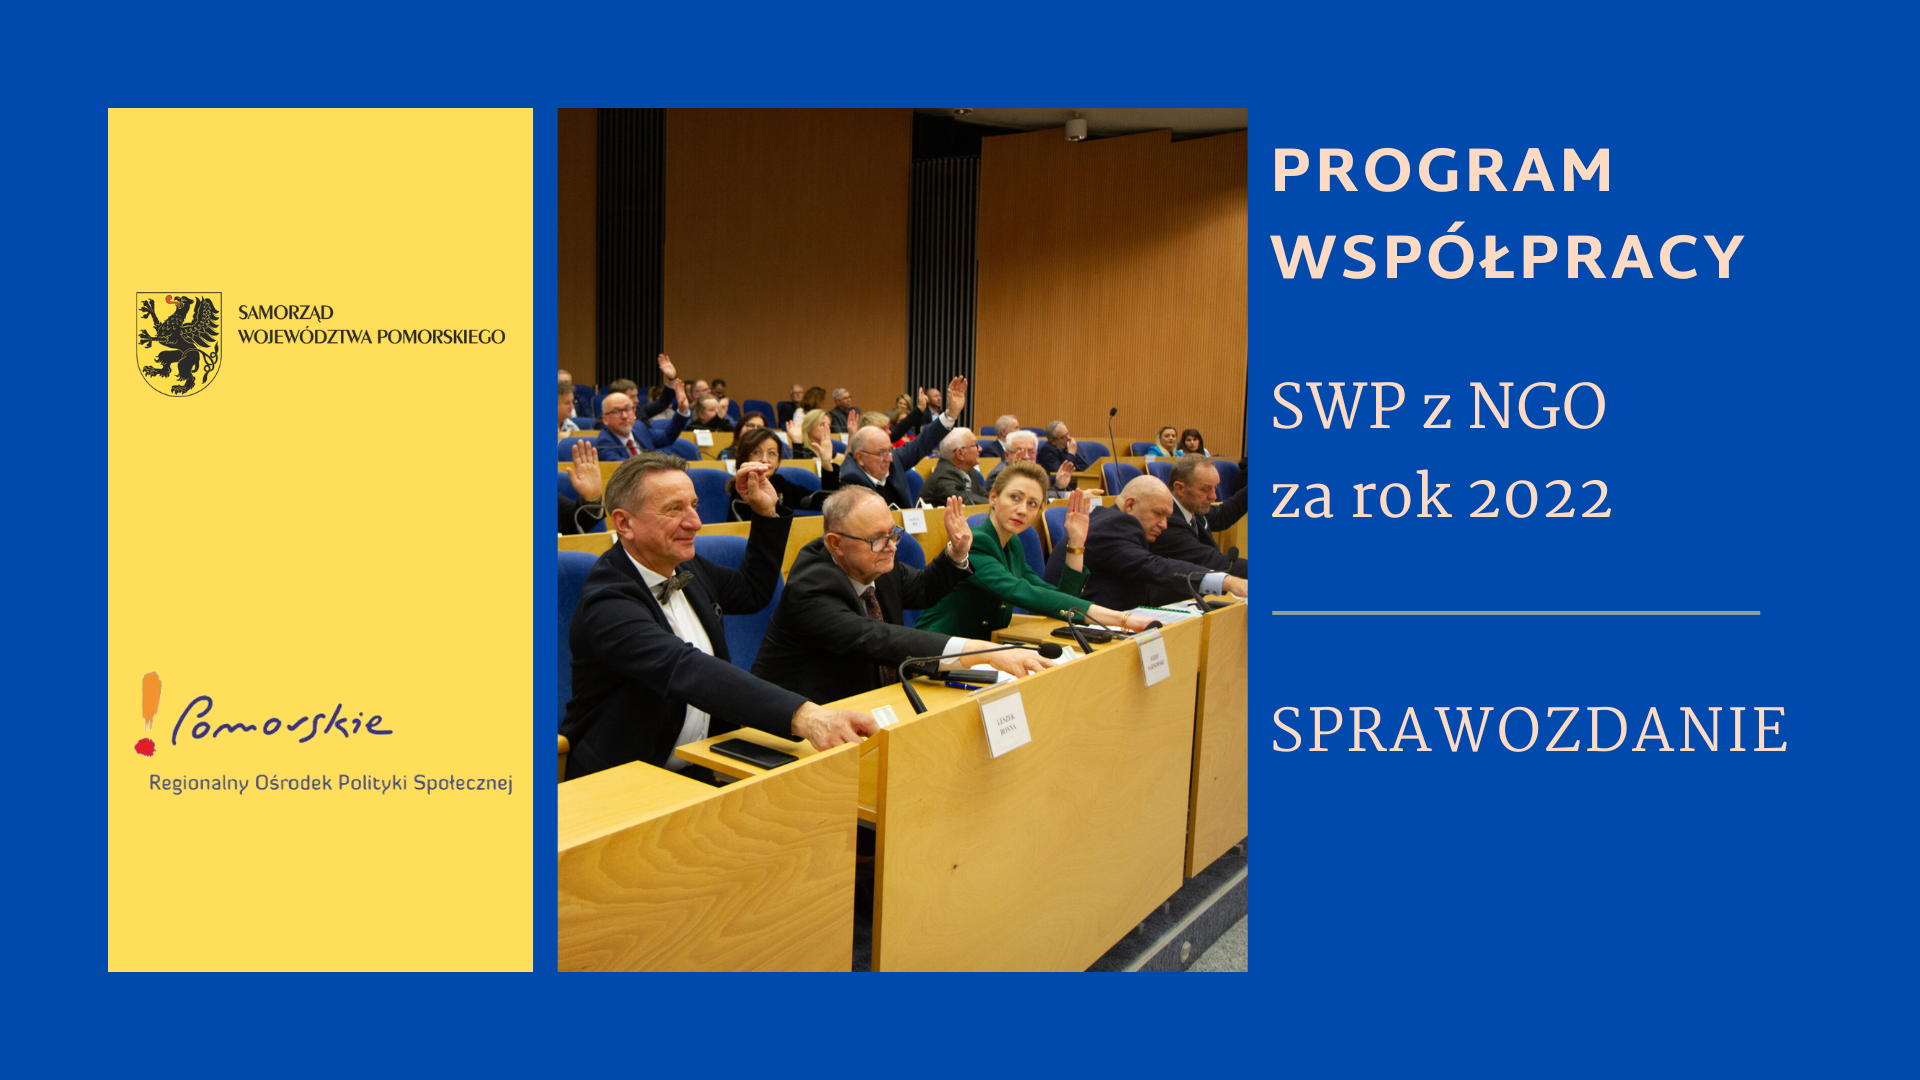 Program Współpracy SWP z NGO 2022 – sprawozdanie